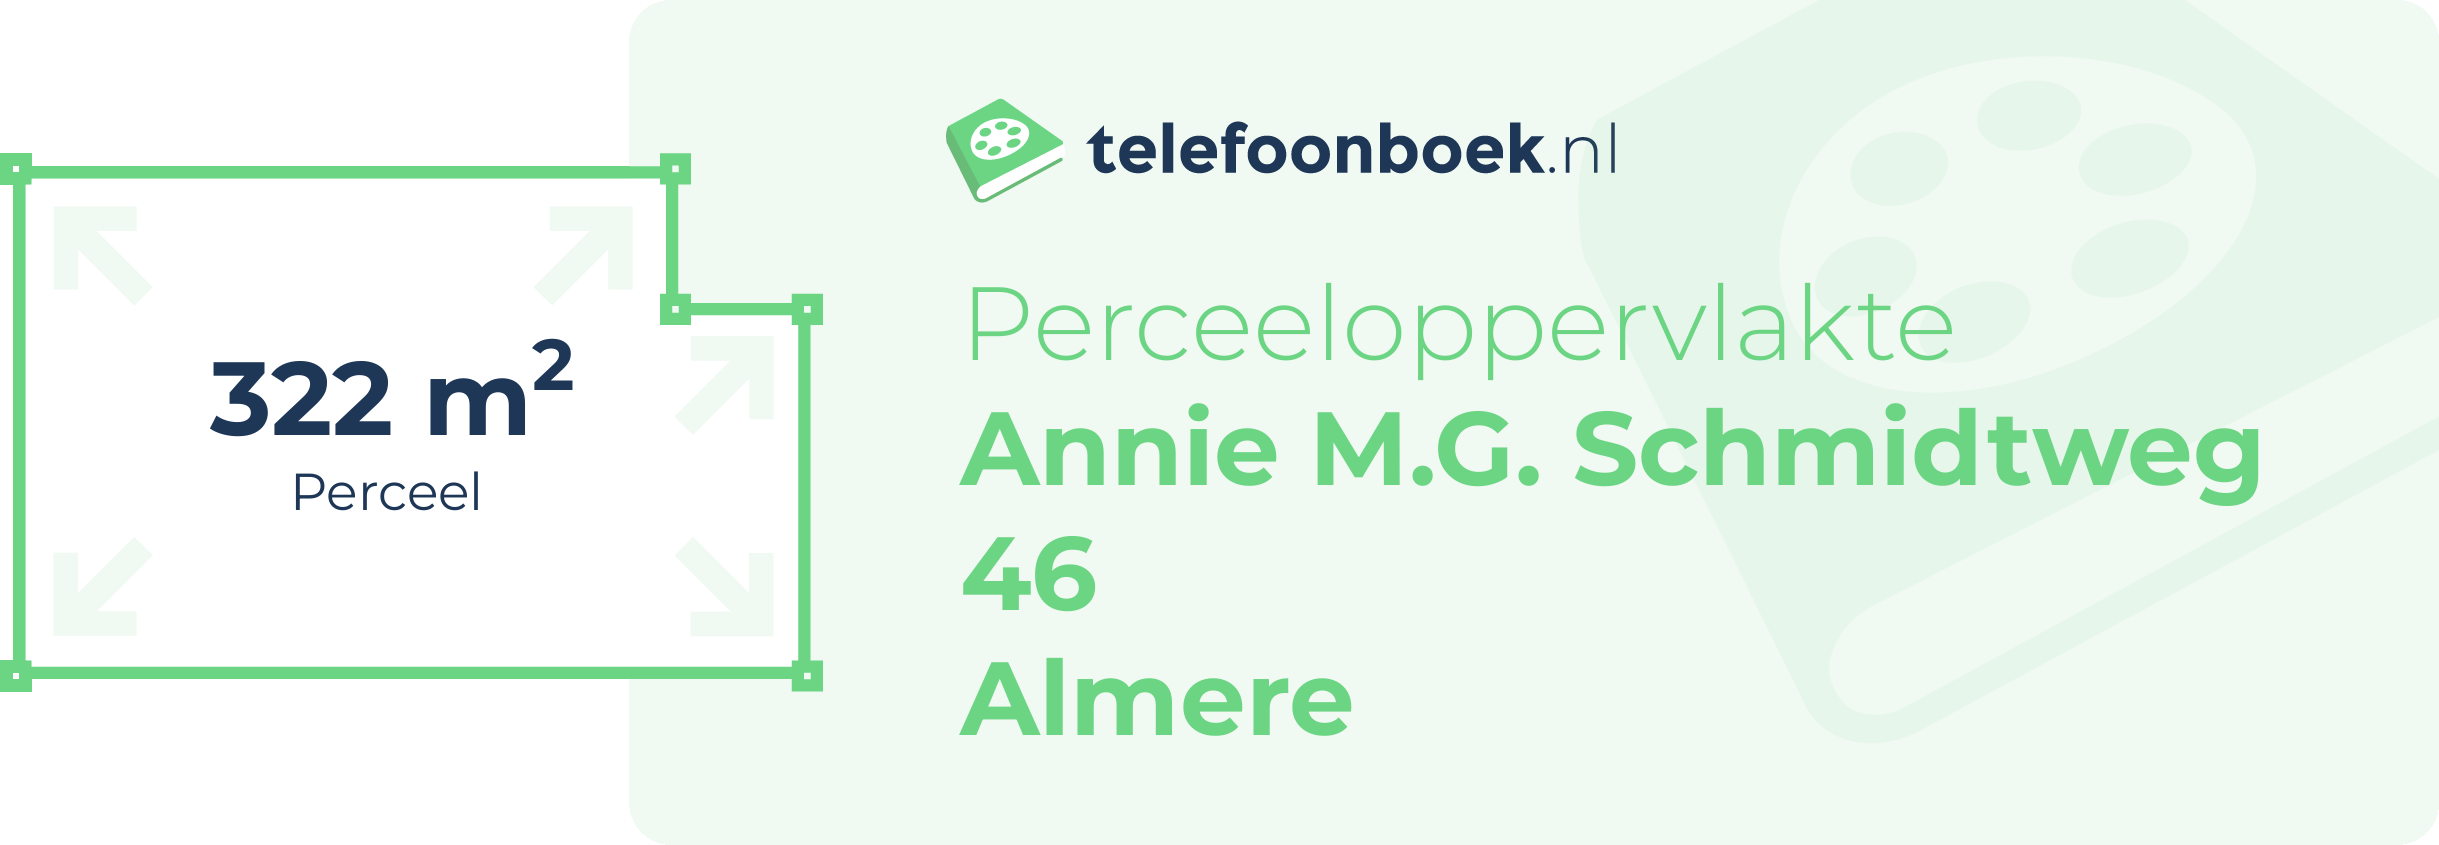 Perceeloppervlakte Annie M.G. Schmidtweg 46 Almere